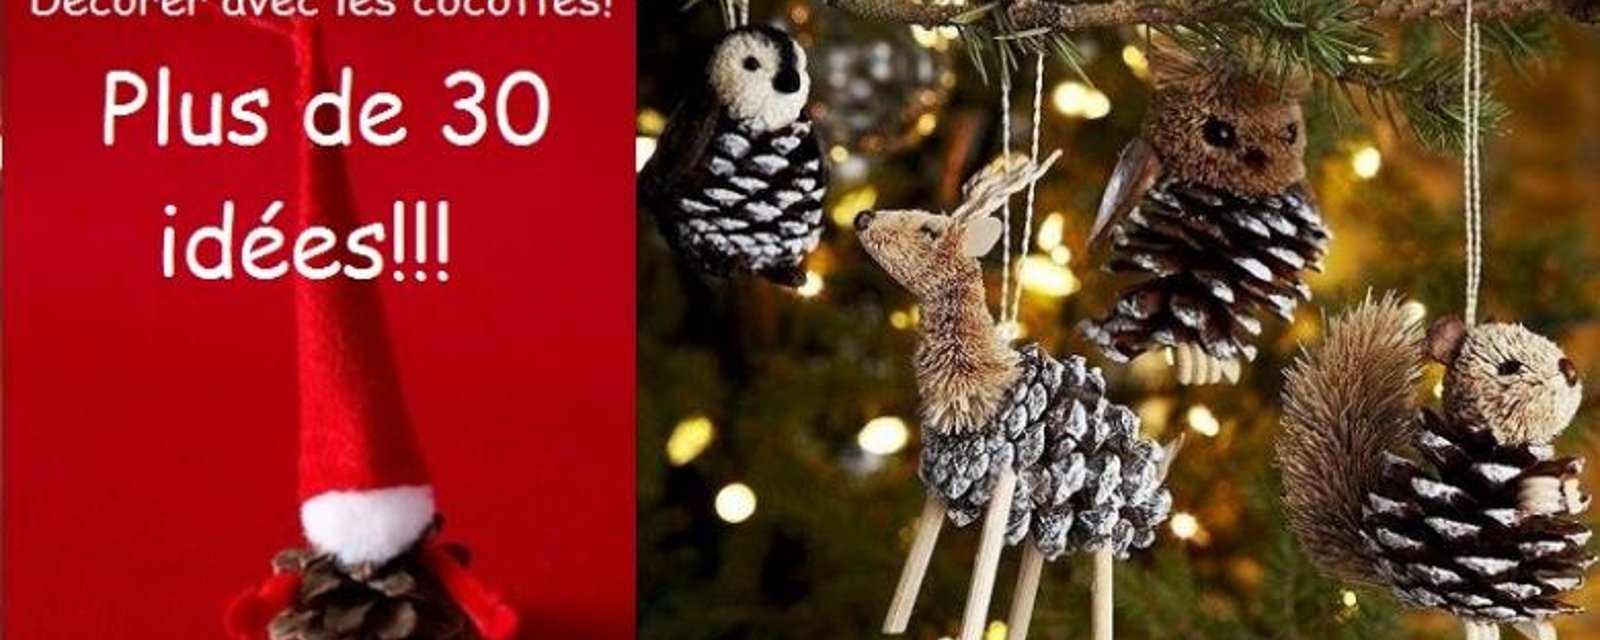 Plus de 30 idées de décoration de Noël à faire avec des cocottes de pins! 